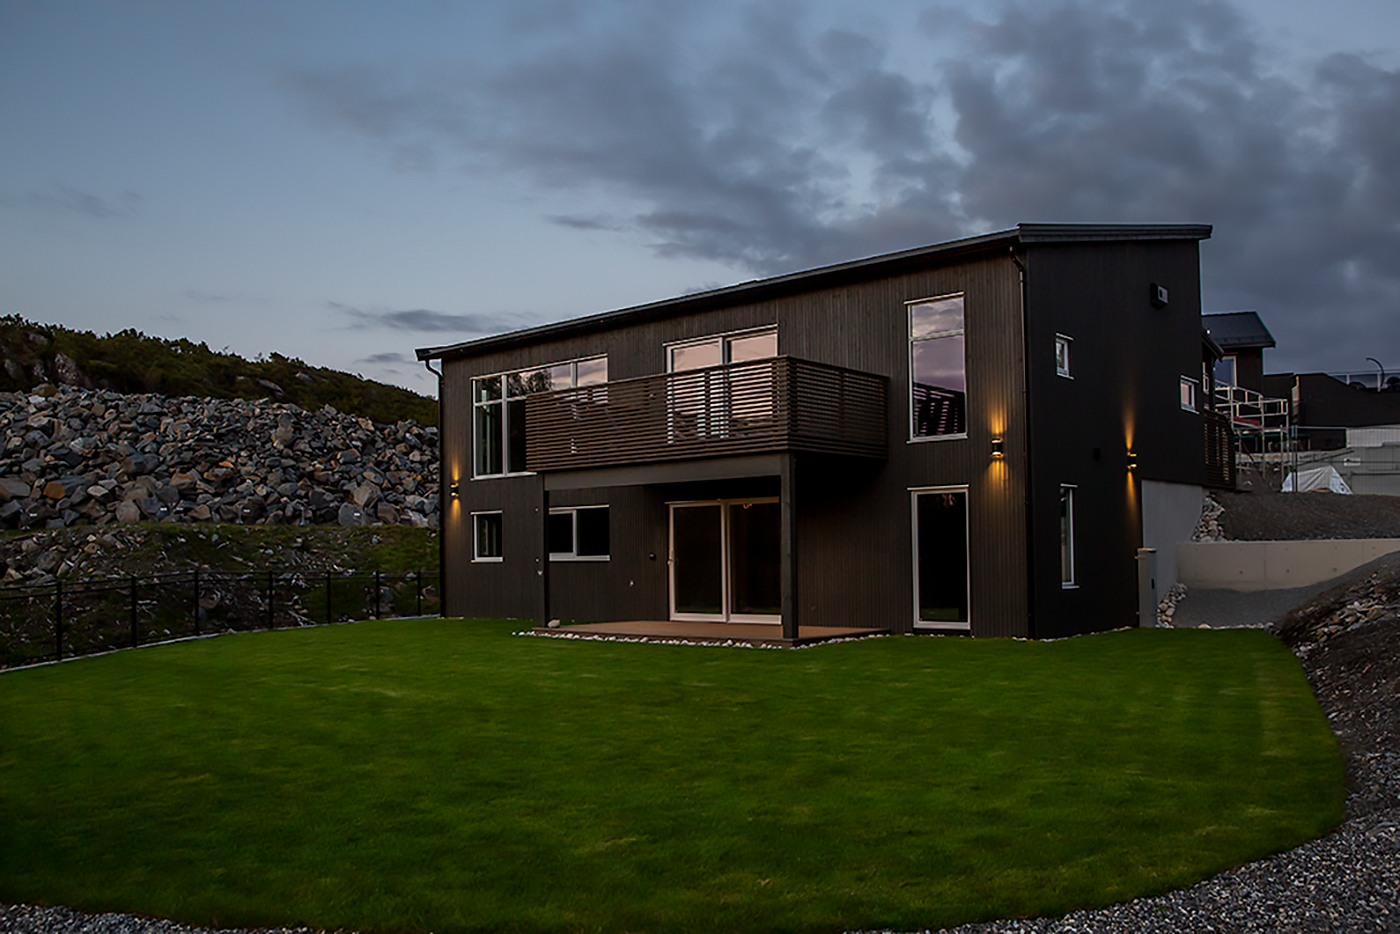 Dette er et bilde av et hus, en brun funkisbolig i solnedgang. Bildet er fotografert for Sandøy Byggservice